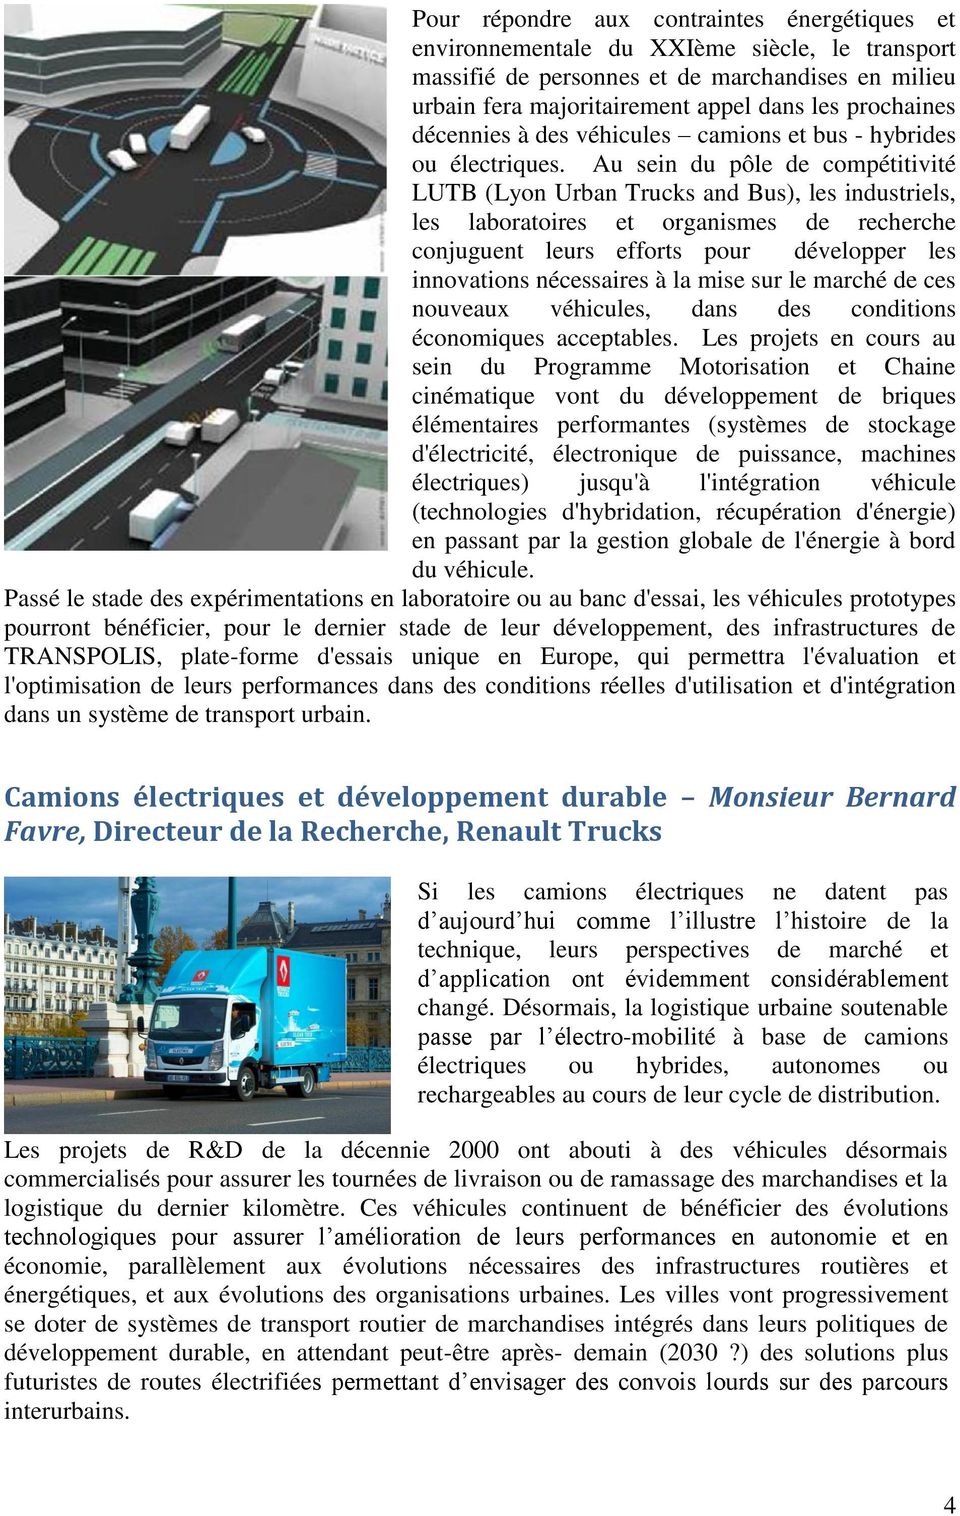 Au sein du pôle de compétitivité LUTB (Lyon Urban Trucks and Bus), les industriels, les laboratoires et organismes de recherche conjuguent leurs efforts pour développer les innovations nécessaires à